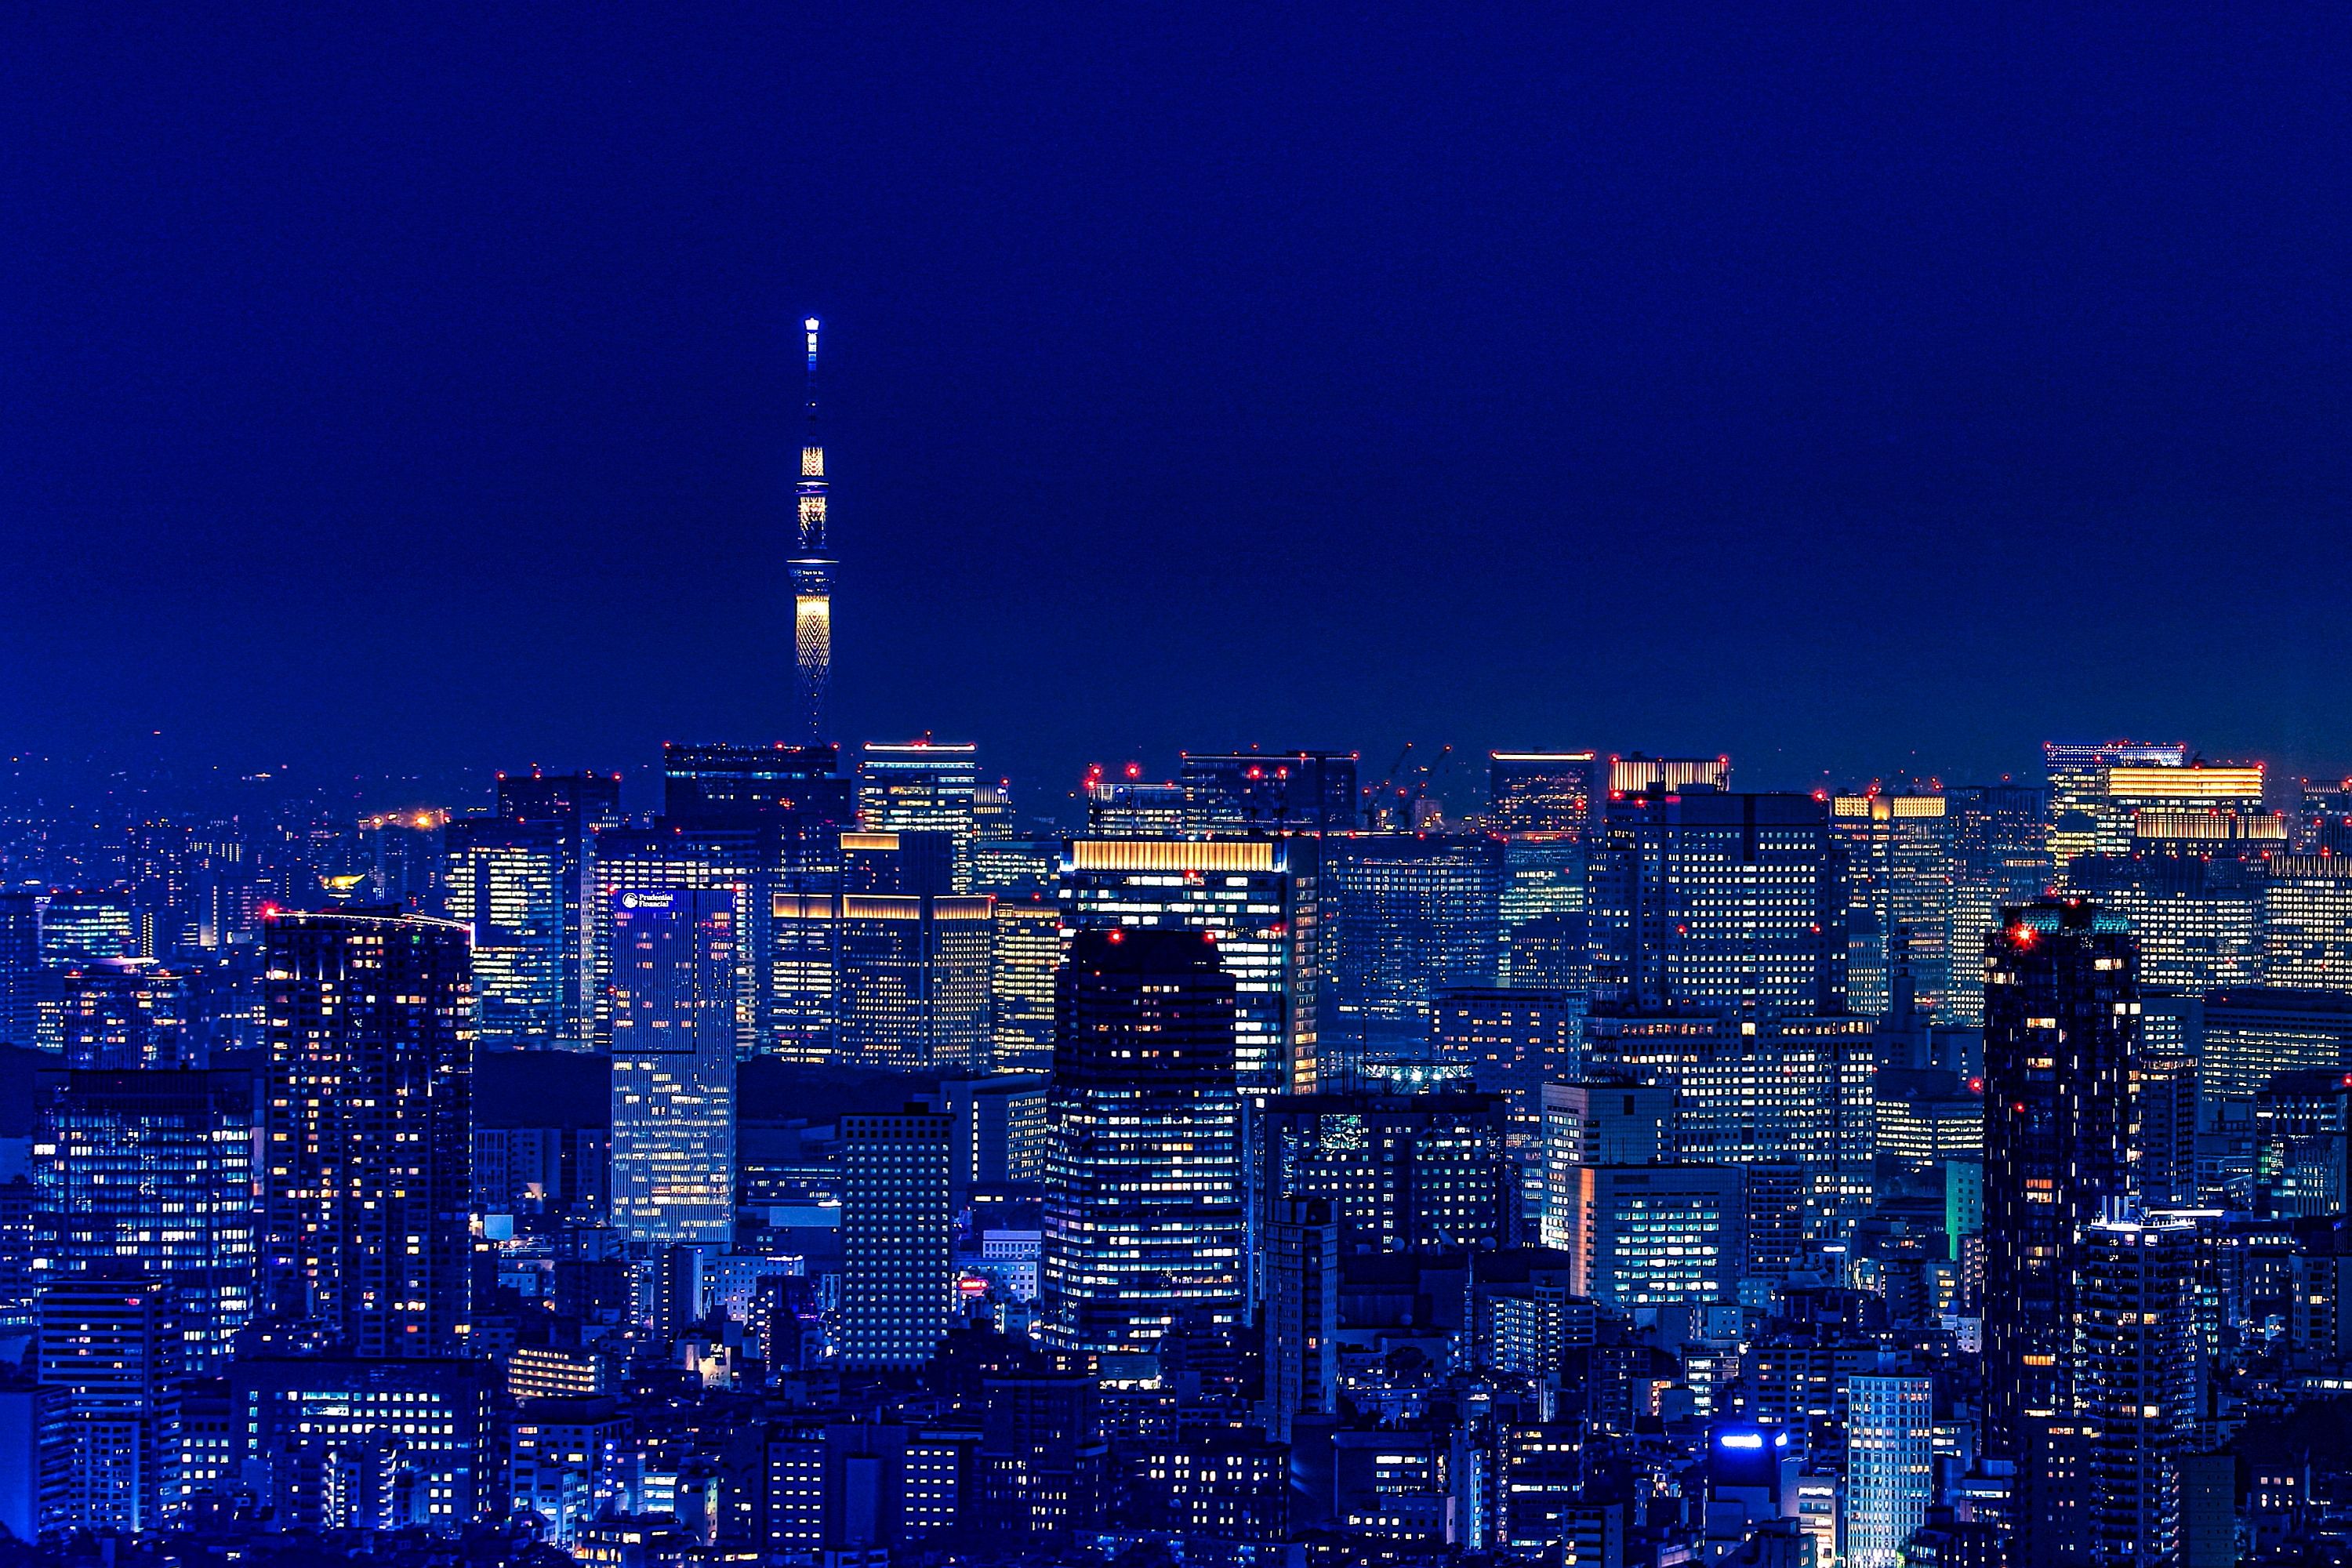 渋谷スカイから見た東京スカイツリー夜景 19年11月1日 東京スカイツリー定点観測所